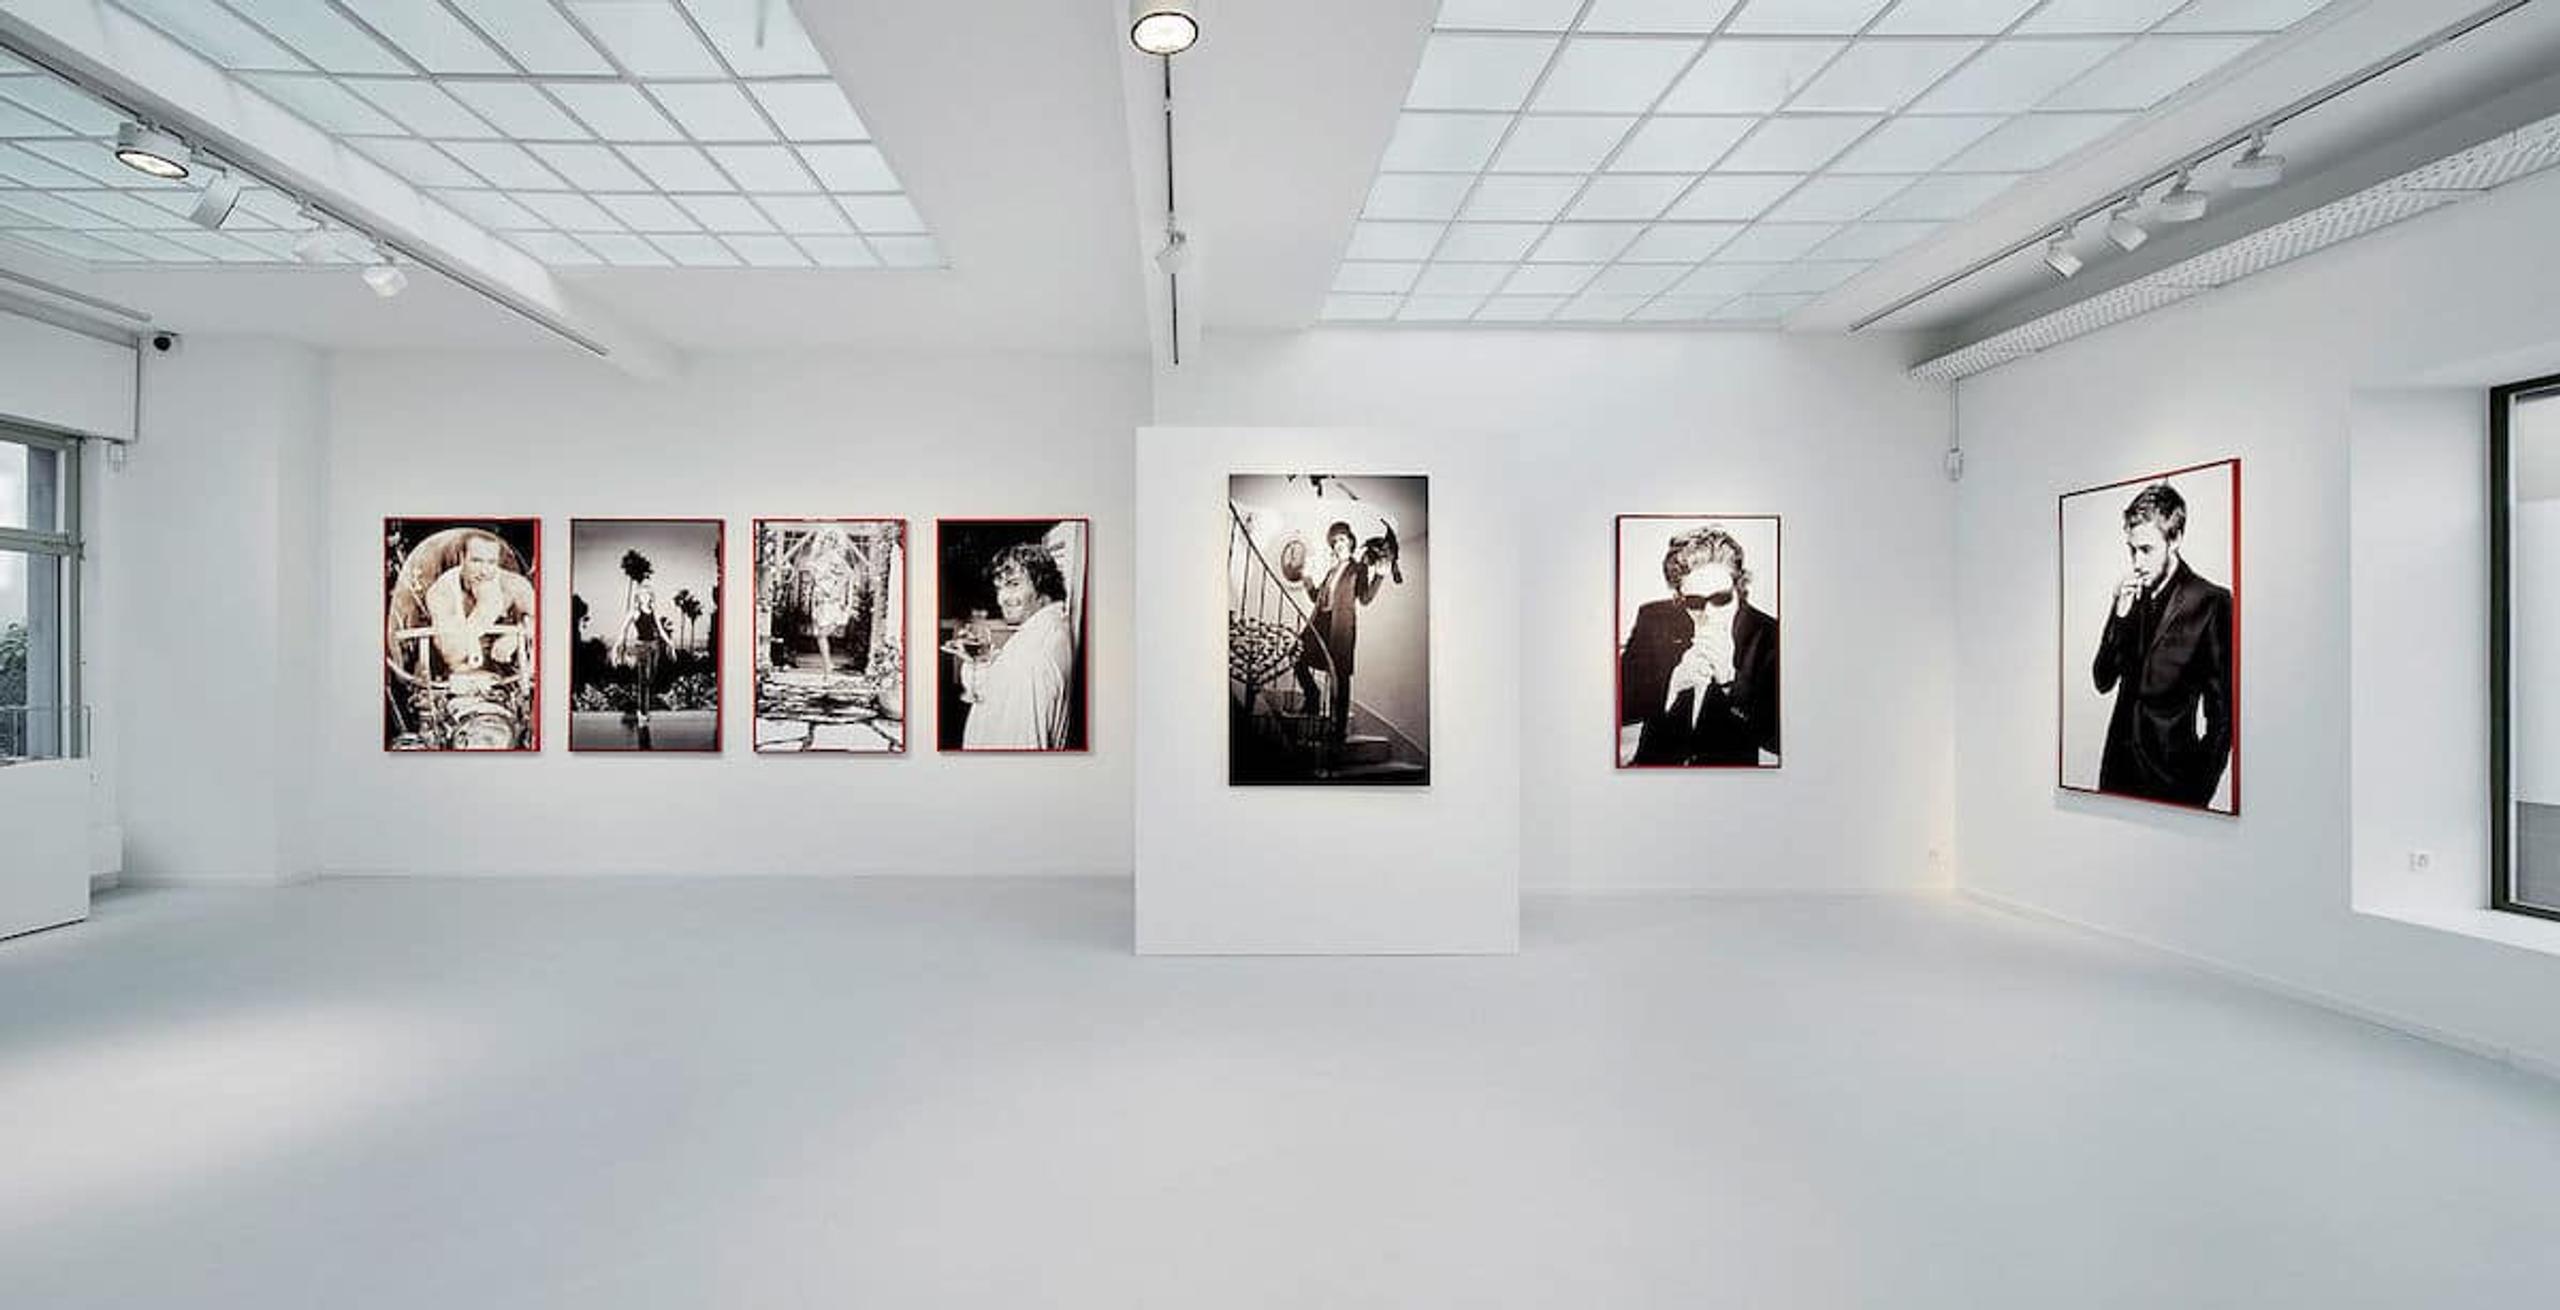 photography exhibition at the Galerie Gmurzynska in Zurich, Switzerland